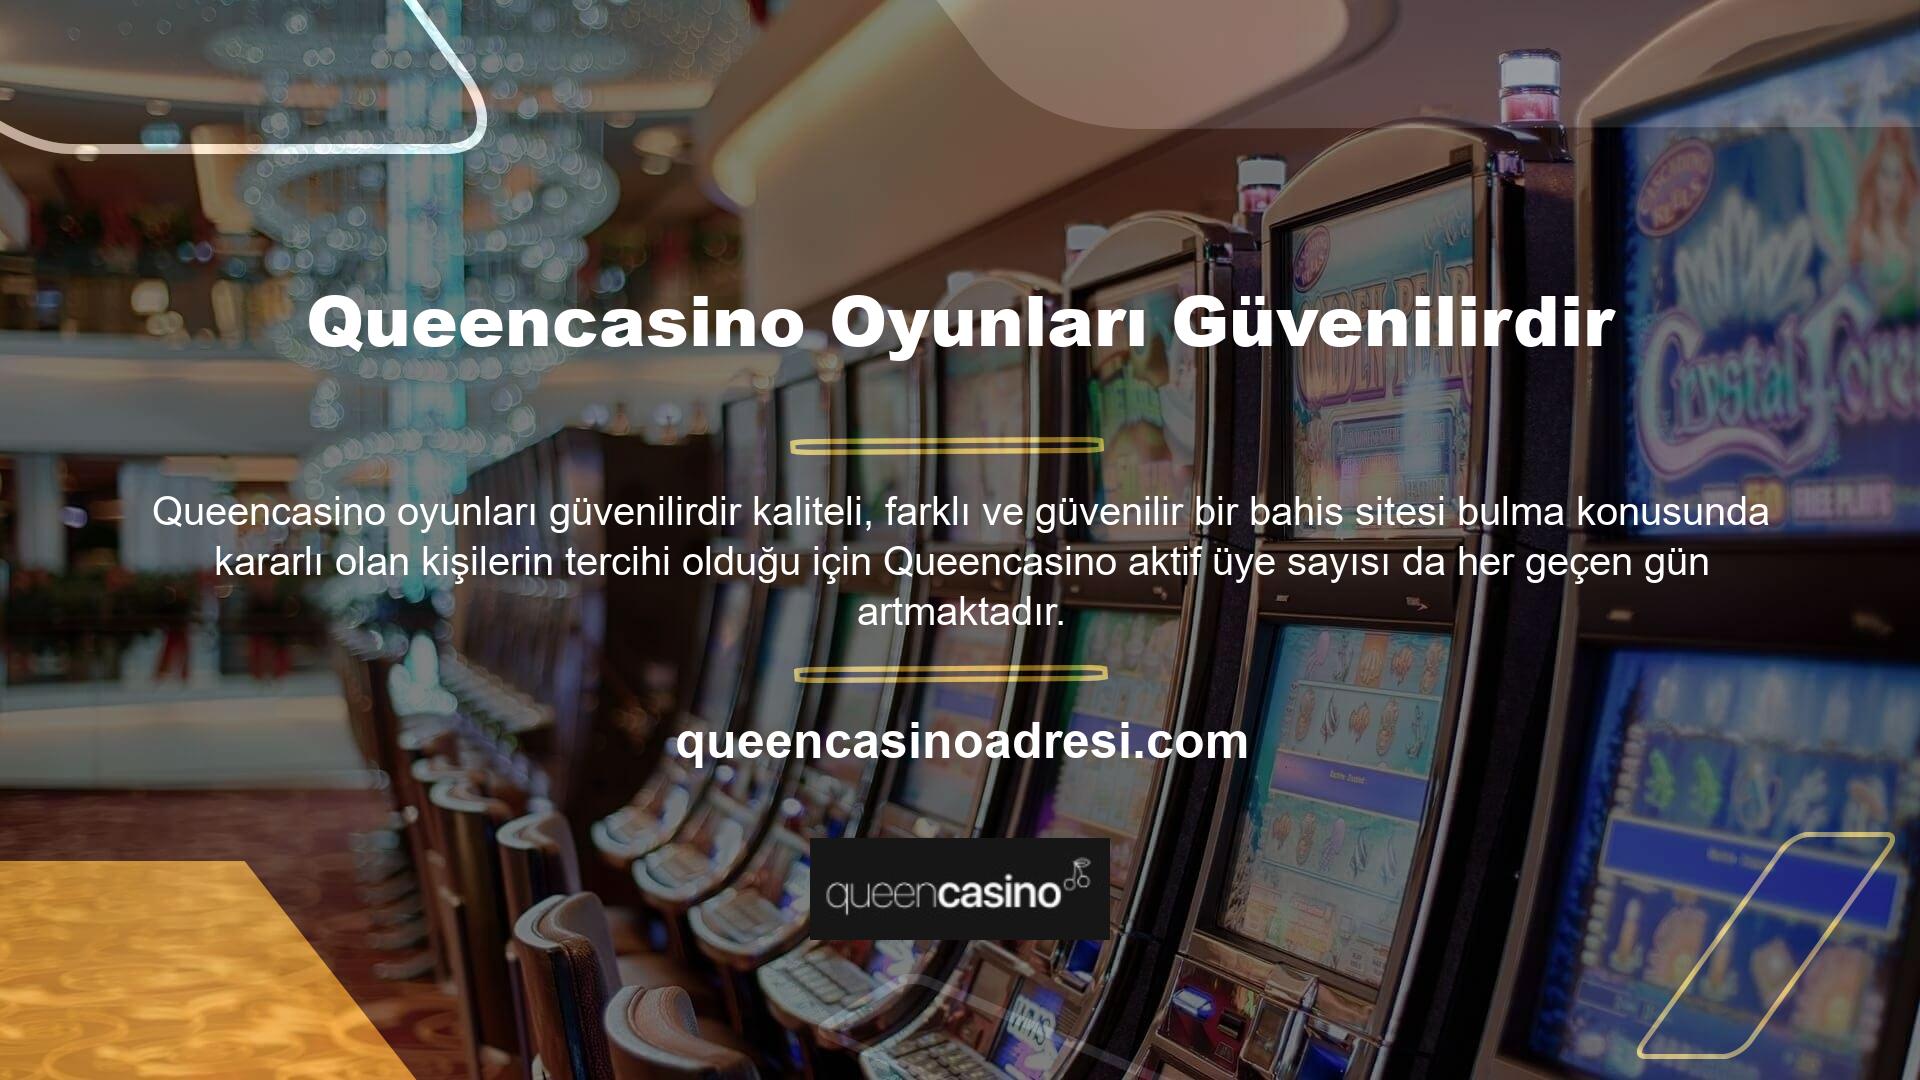 Queencasino ödeme hızı, güvenilir altyapısı ve olumlu kullanıcı yorumları, birçok bahis tutkununu ve casino tutkununu Queencasino üye olmaya teşvik etmektedir